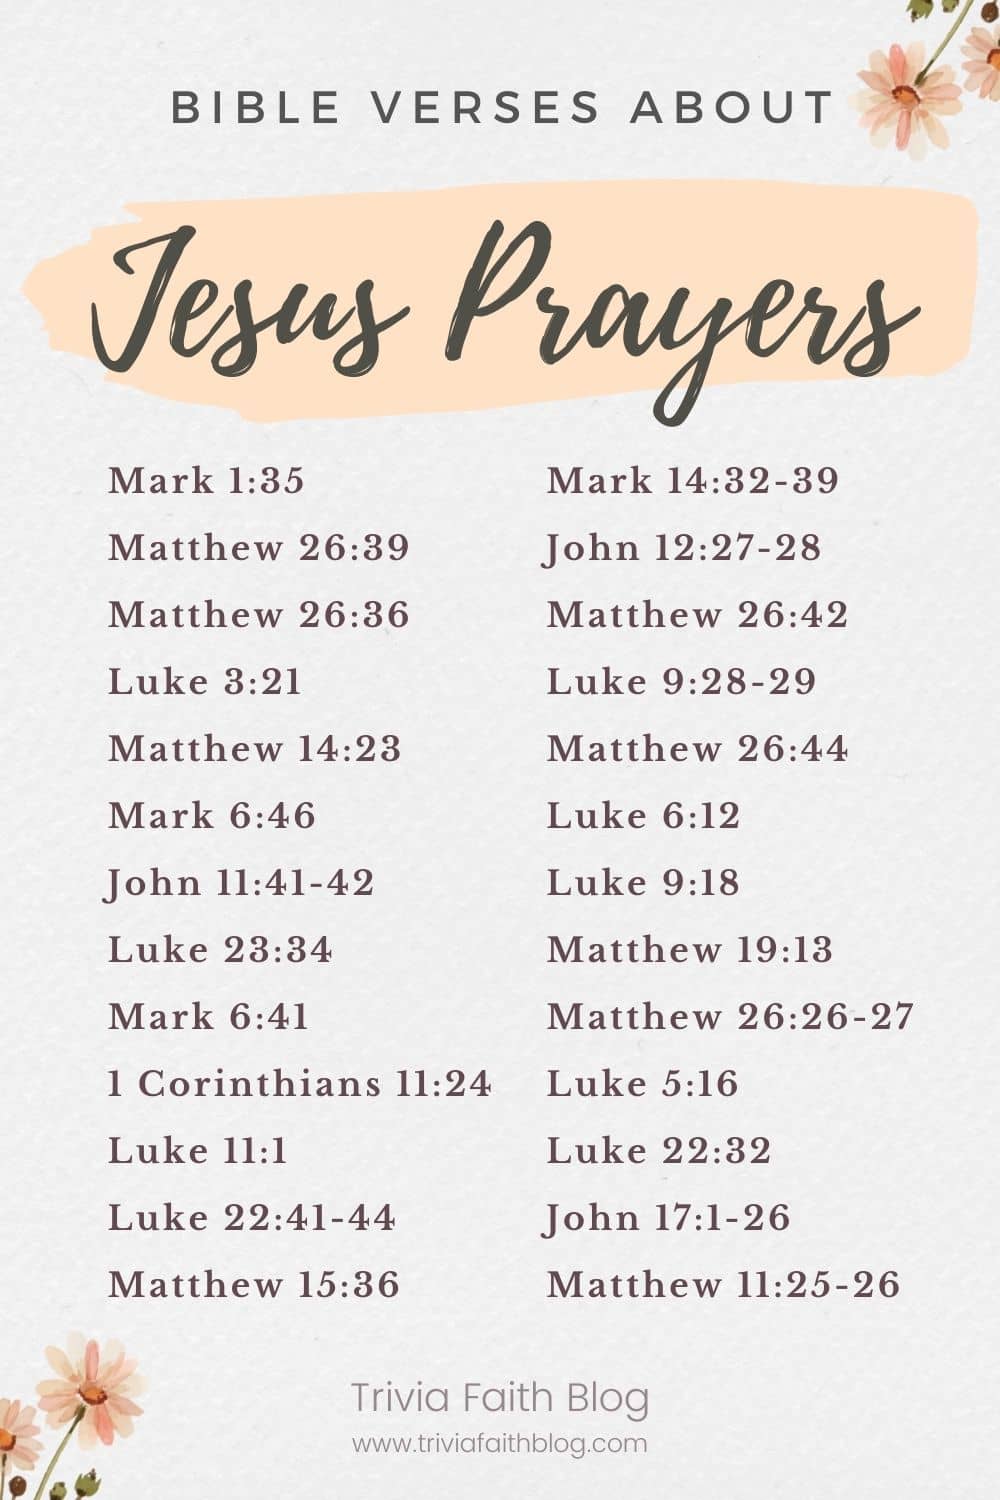 Bible verses about Jesus Prayers KJV